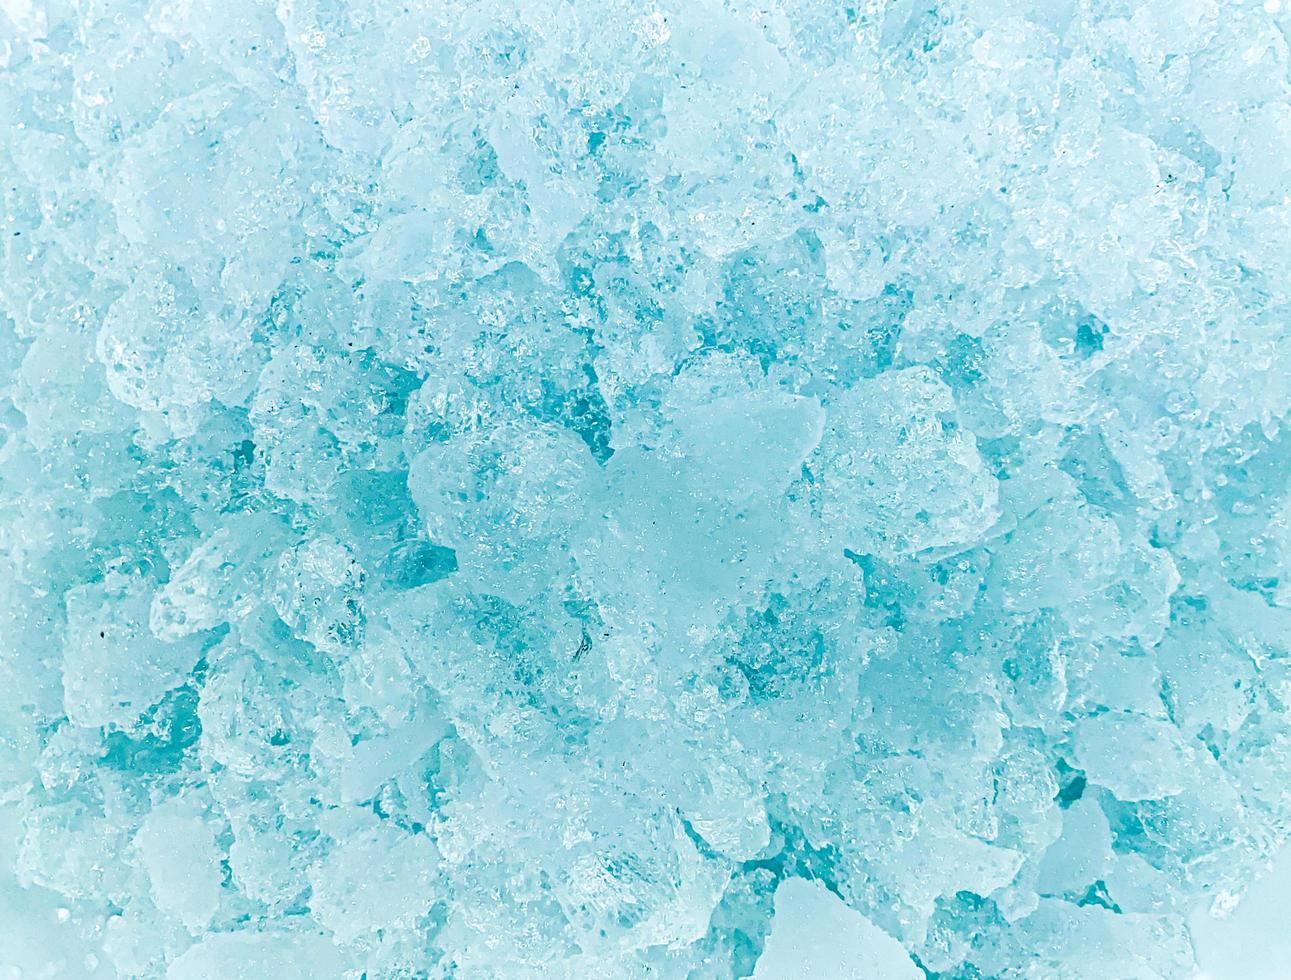 fondo de hielo abstracto, los cubitos de hielo se sienten frescos en los días calurosos, el hielo es indispensable en verano. te ayudará a refrescarte y te hará sentir bien. foto